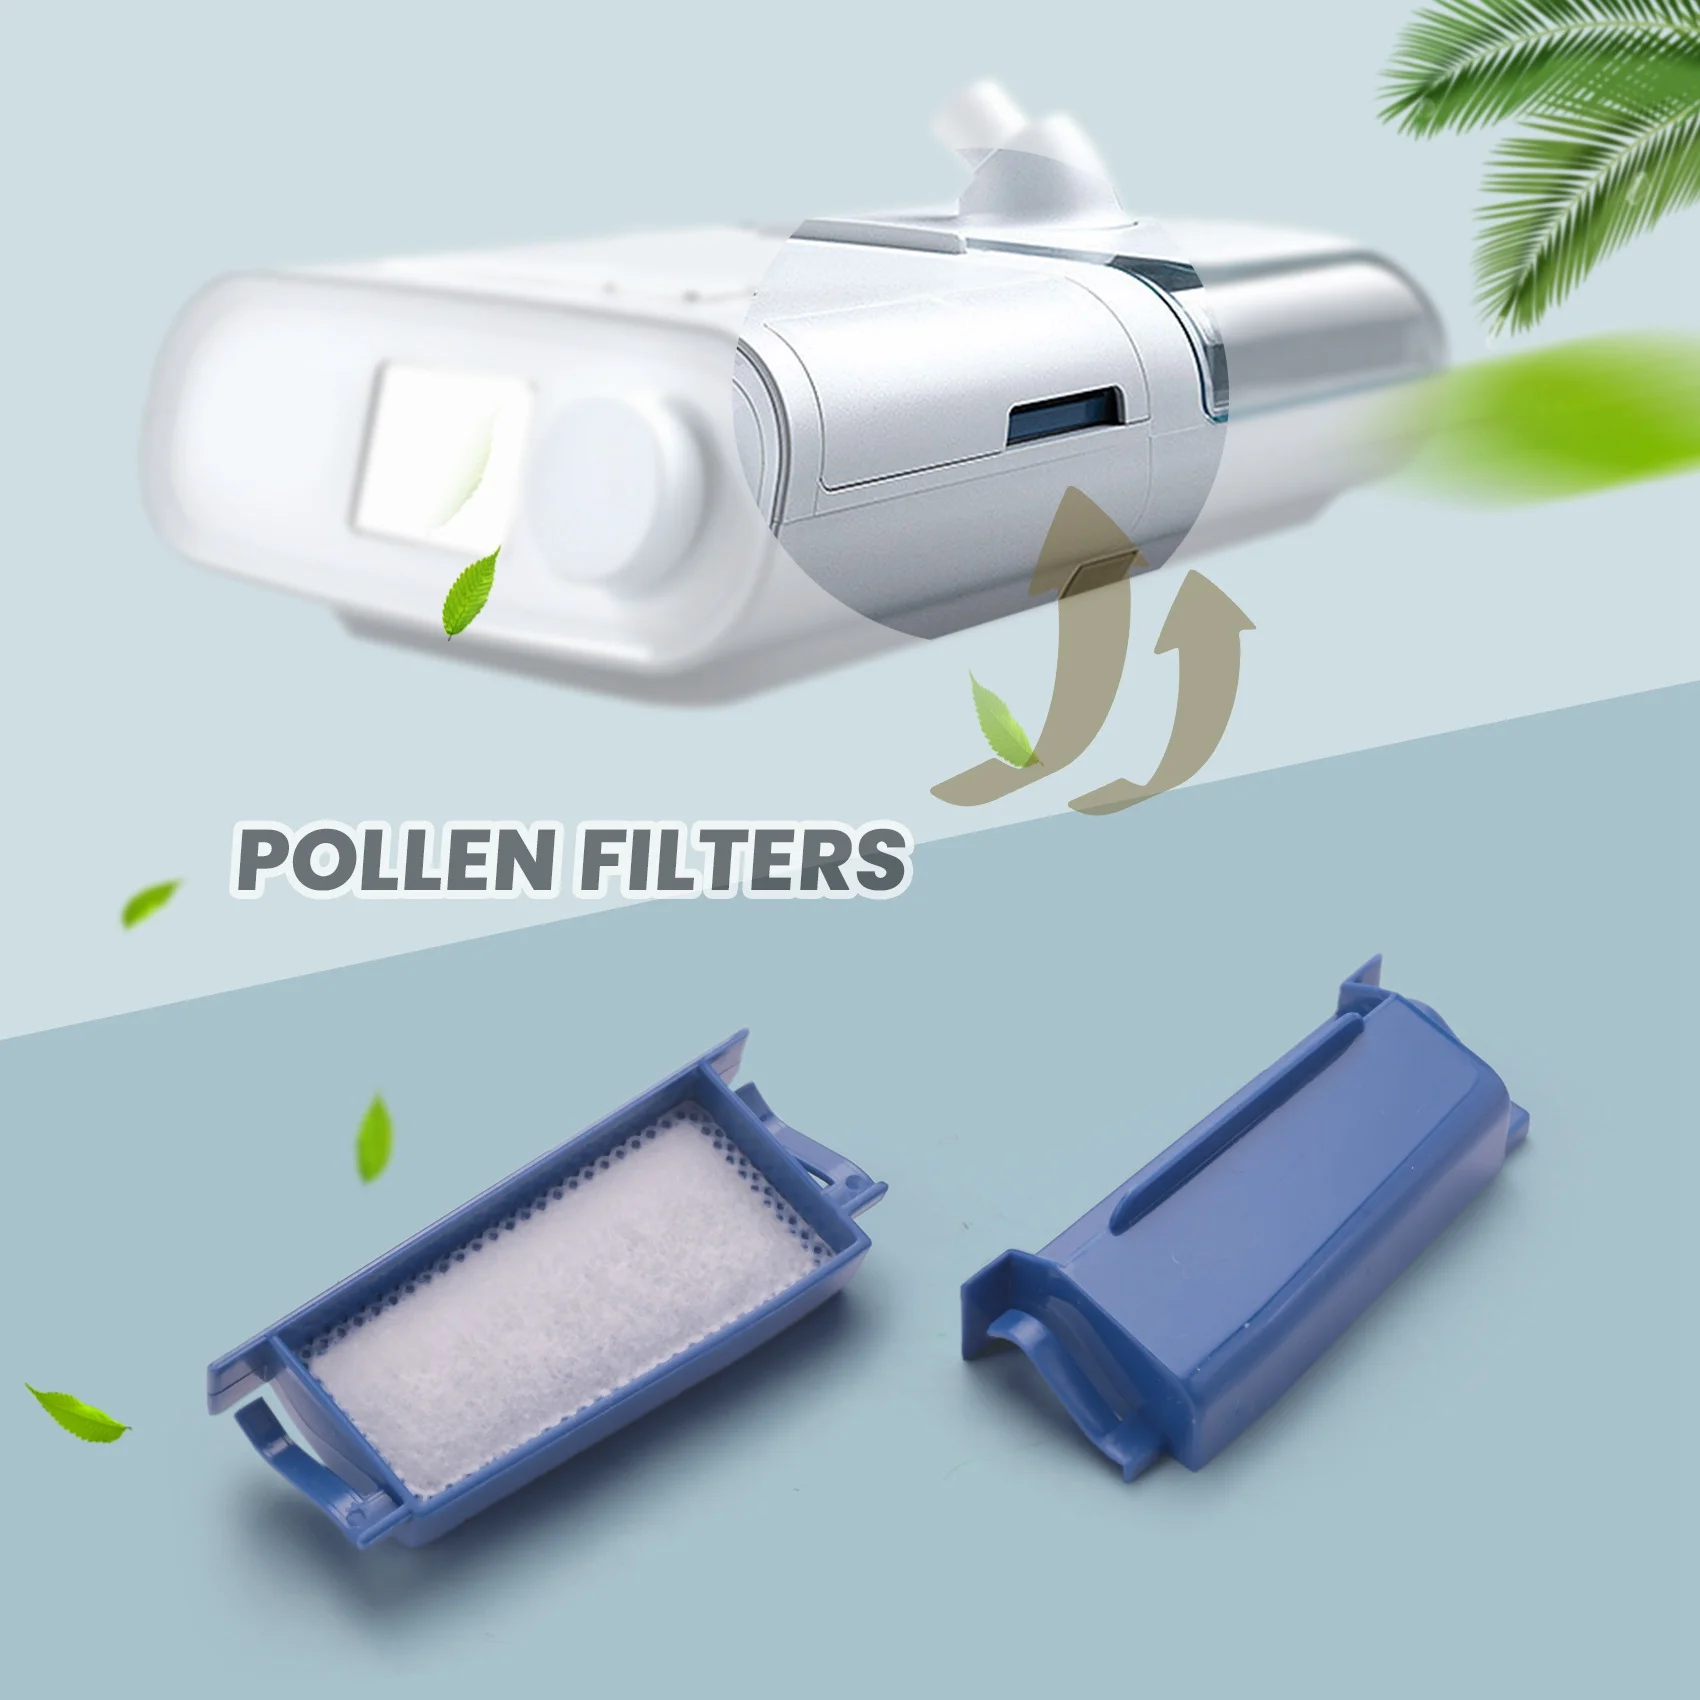 Комплекты фильтров Philips Respironics для dreamstation включают в себя 2 многоразовых фильтра и 6 одноразовых фильтров сверхтонкой очистки - 1